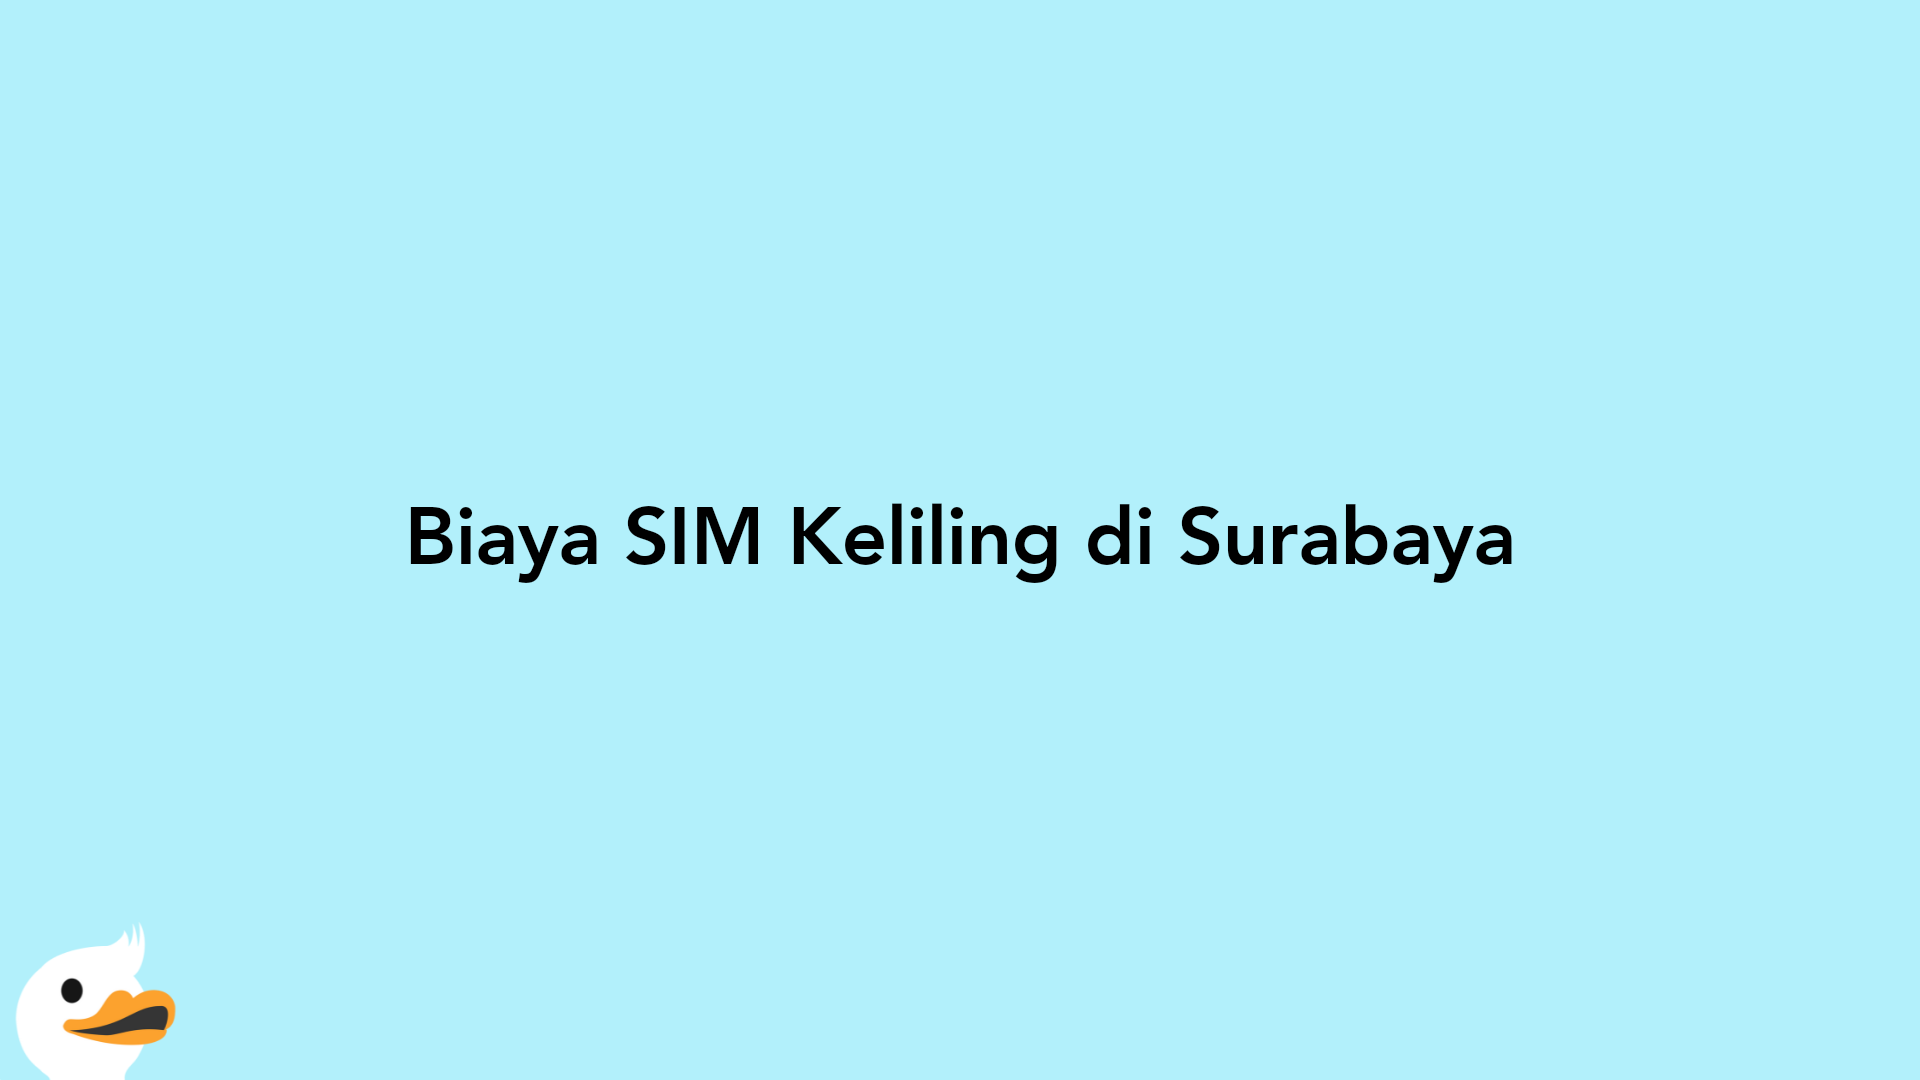 Biaya SIM Keliling di Surabaya